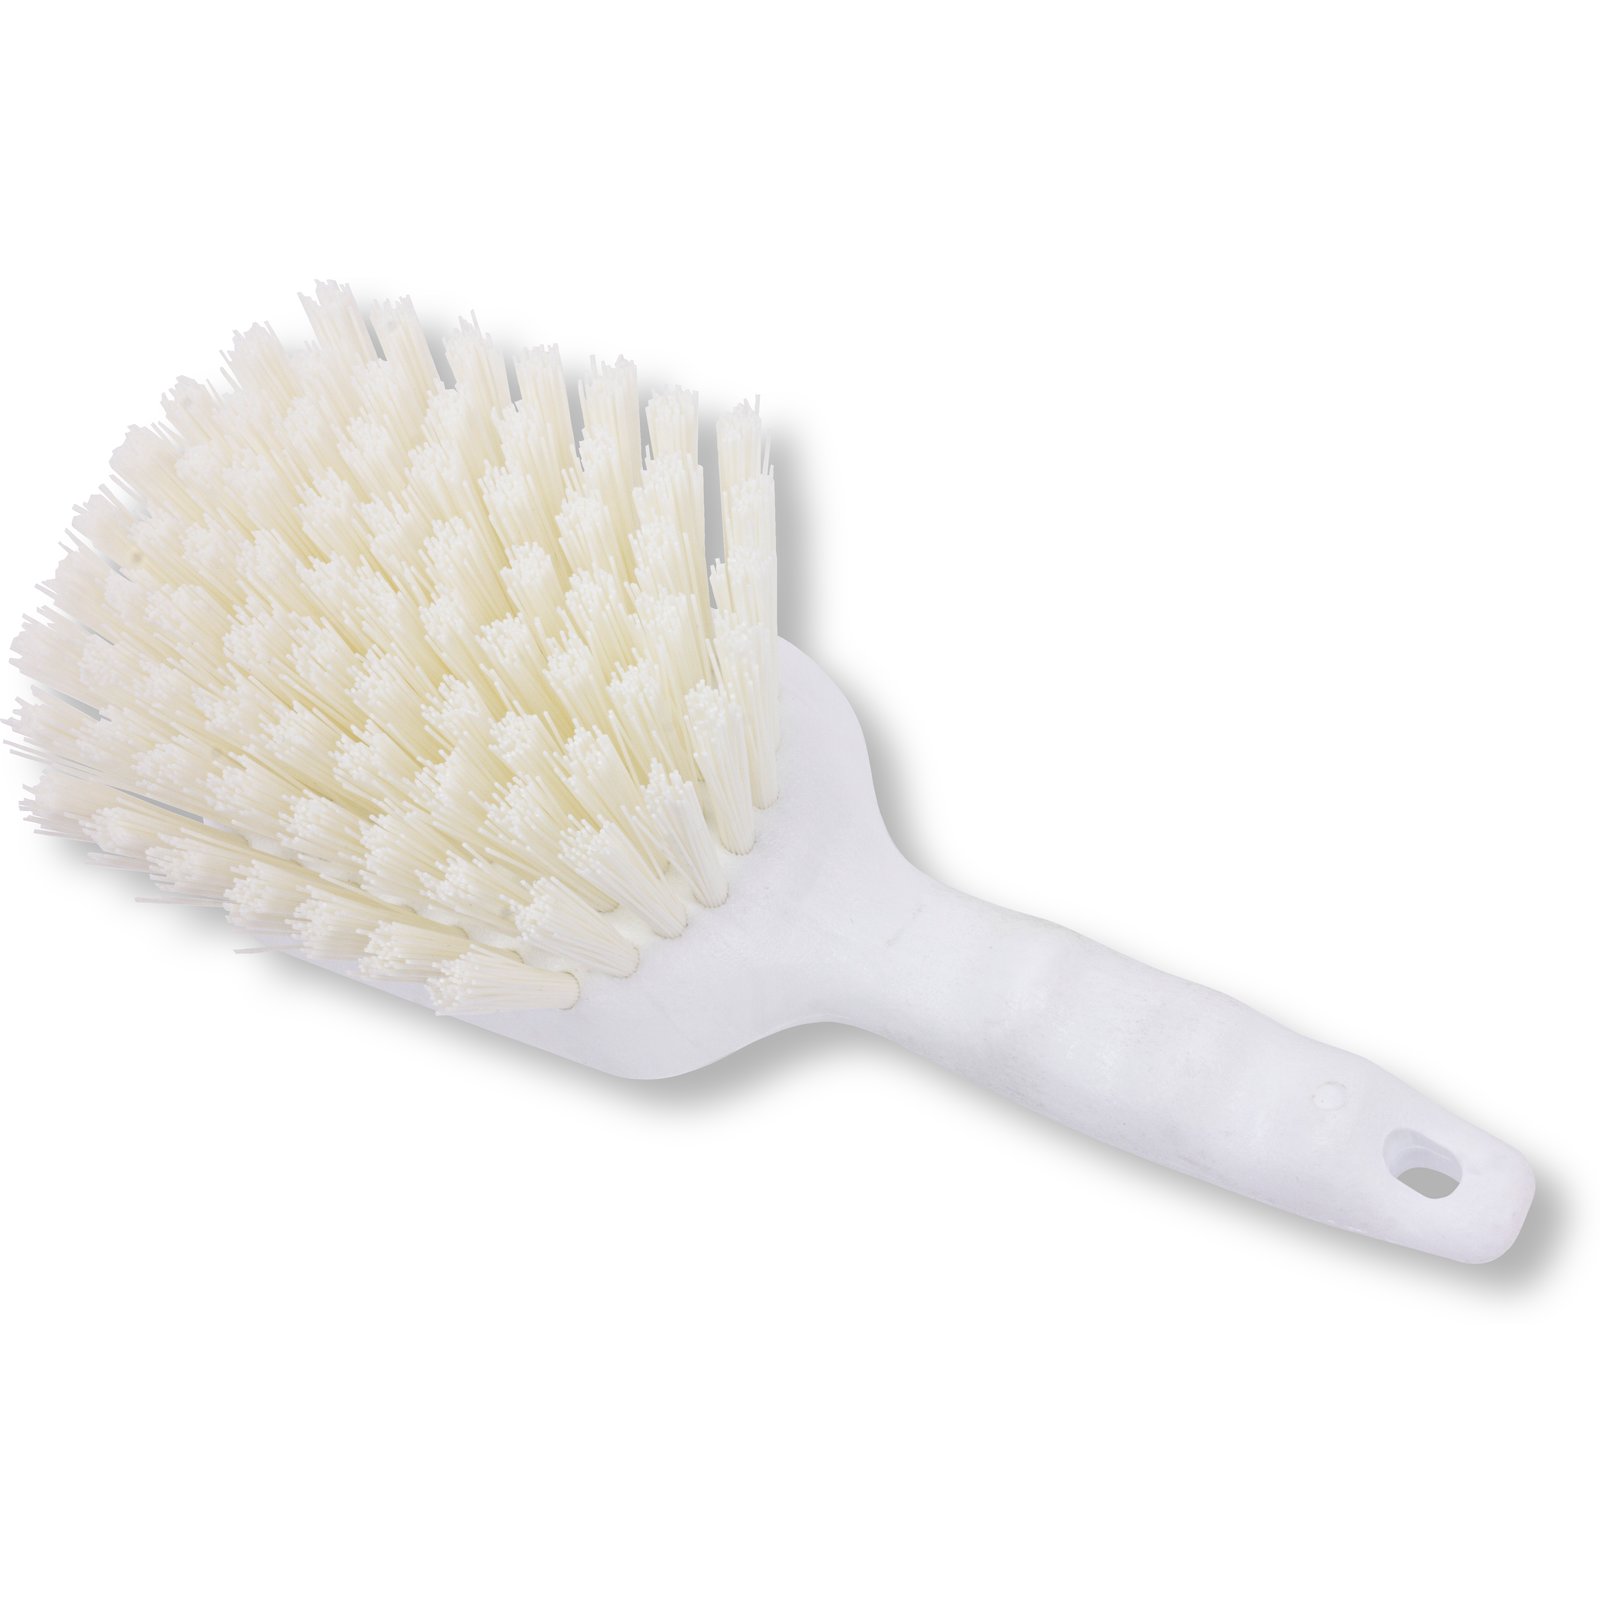 10 Scrub Brush – Eggshells Kitchen Co.